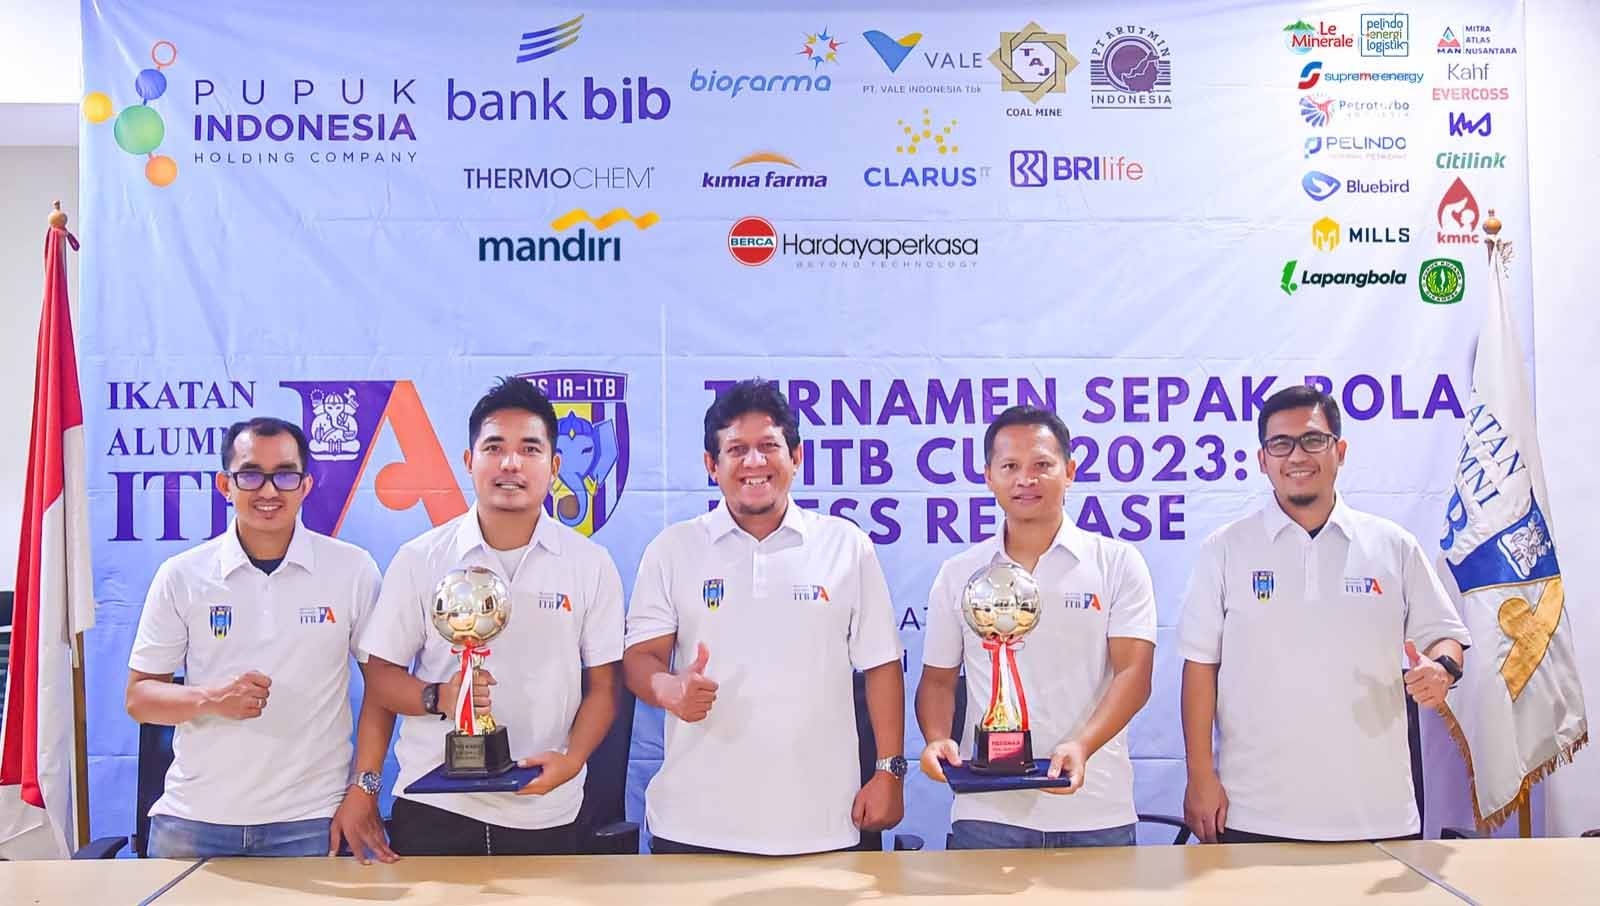 Turnamen Sepak Bola IA-ITB Cup 2023 diselenggarakan pada tanggal 4 Februari sampai dengan 12 Maret 2023 di Lapangan C Senayan, Jakarta. (Foto: IA-ITB) Copyright: © IA-ITB